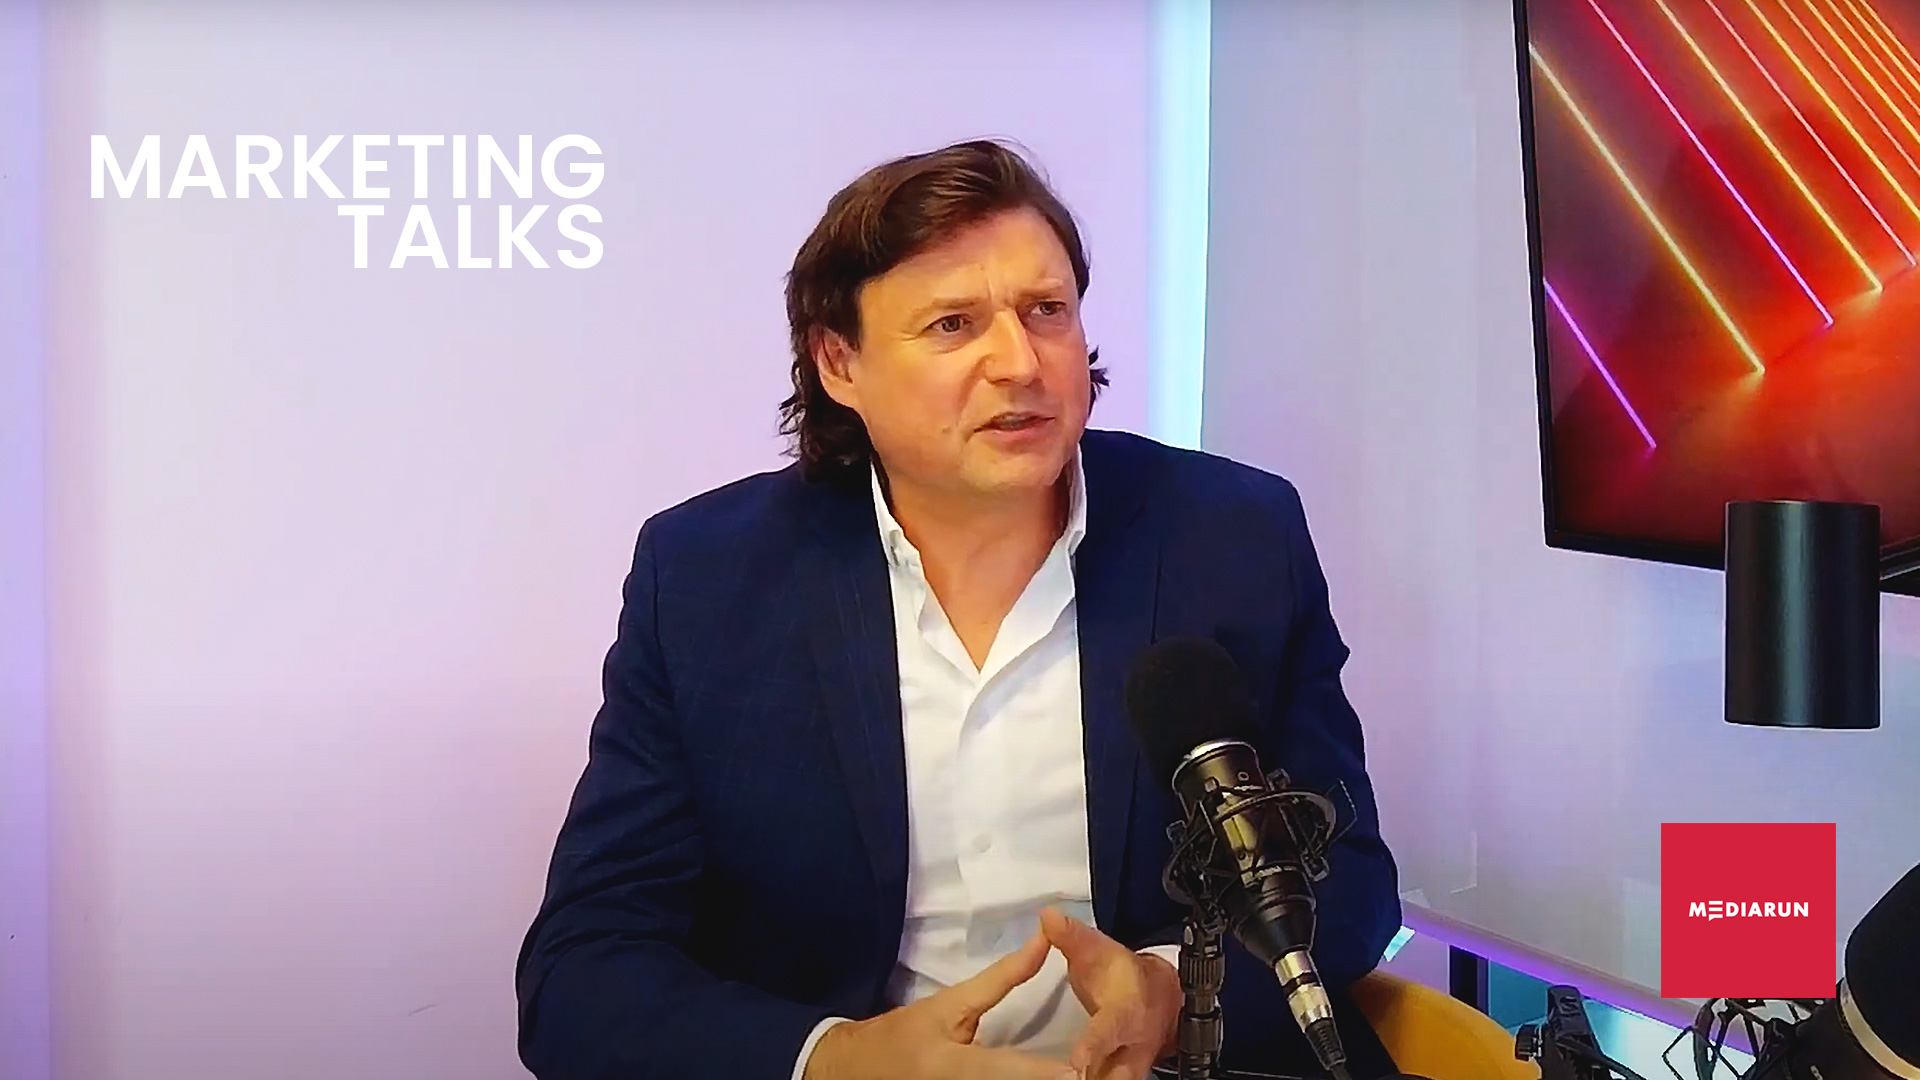 Wywiad z Pawłem Patkowskim Dyrektorem Marketingu Orange - MARKETING TALKS CMO MARKETIMG TALKS PAWEL PATKOWSKI 1920 1080